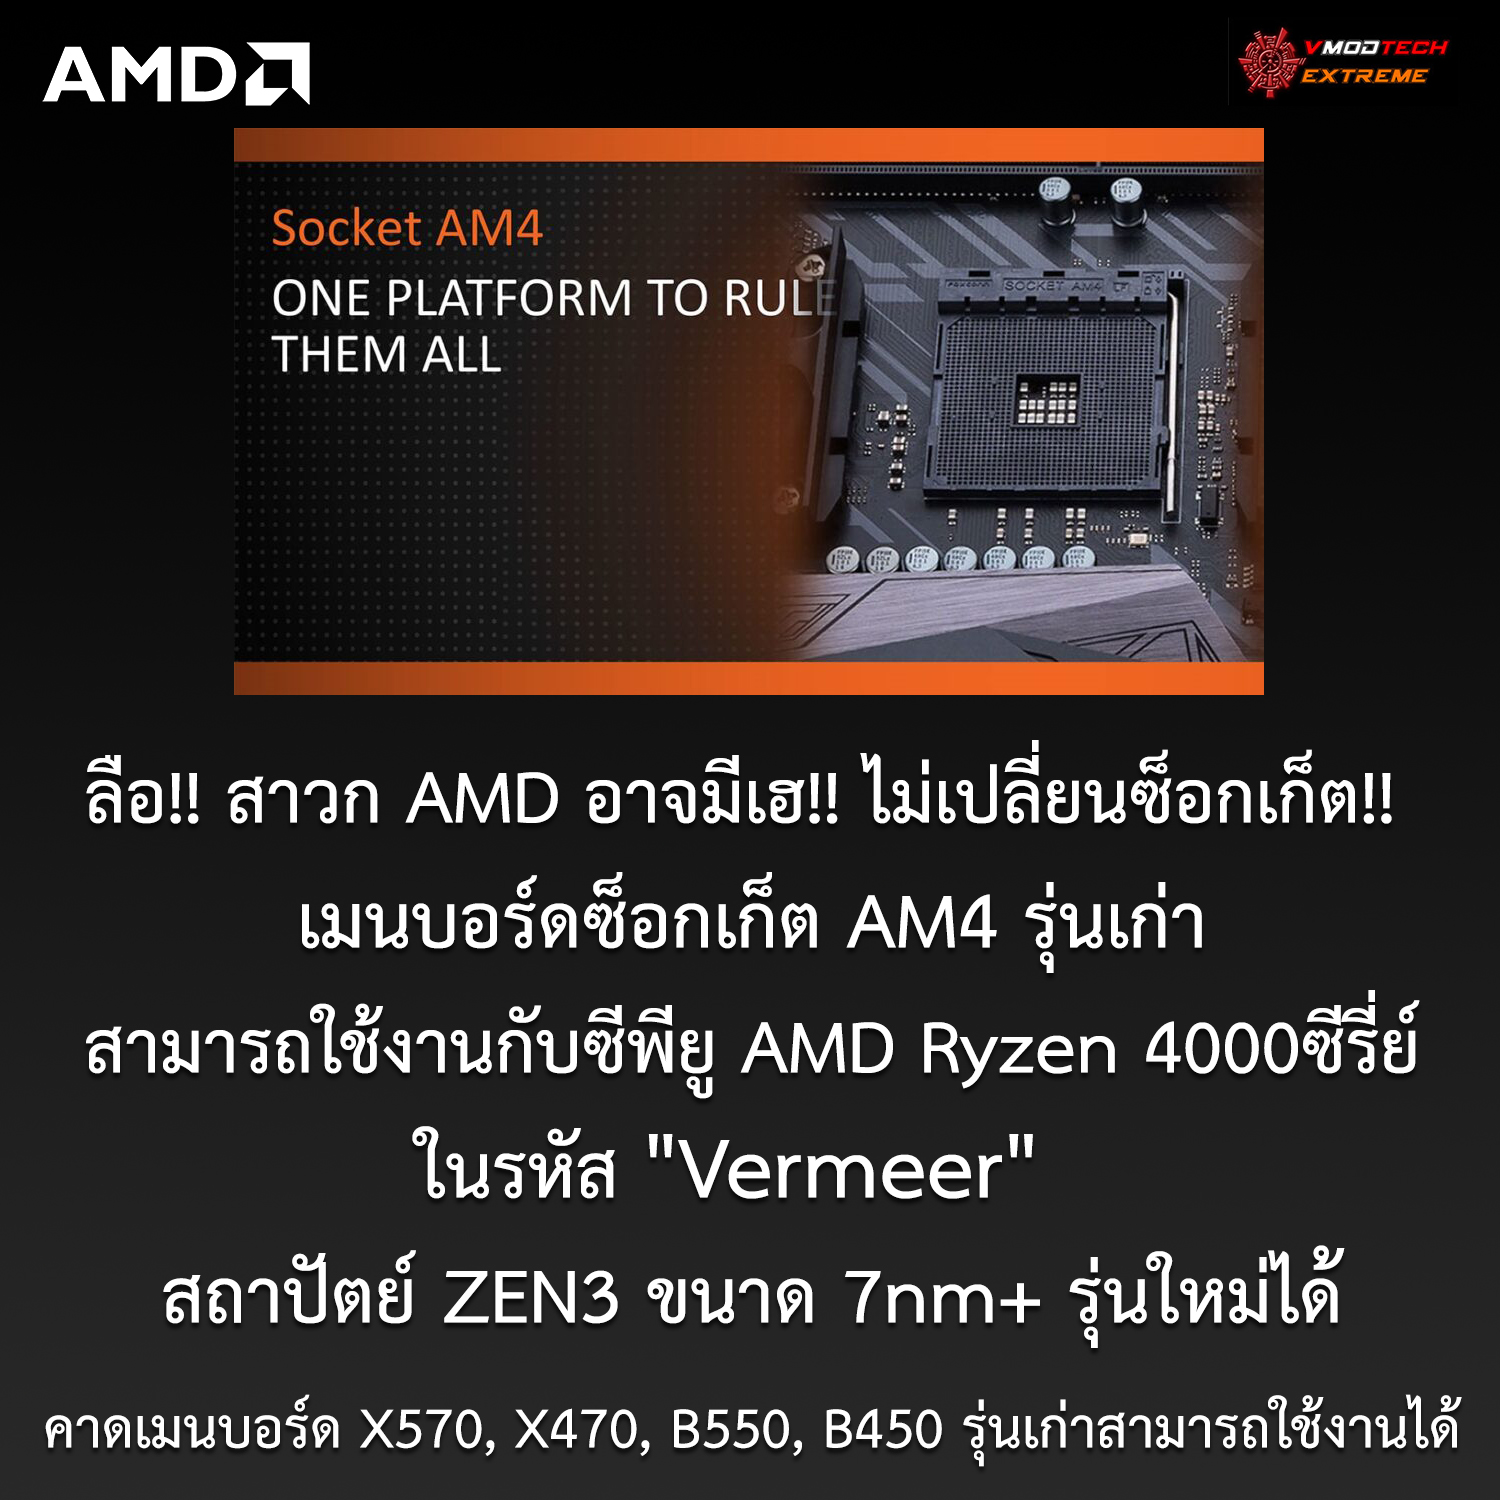 amd am4 ryzen4000 zen3 7nm ลือ!! สาวก AMD อาจมีเฮ!! เมนบอร์ดซ็อกเก็ต AM4 รุ่นเก่าอาจจะรองรับการทำงานซีพียู AMD Ryzen 4000ซีรี่ย์ สถาปัตย์ ZEN3 รุ่นใหม่ได้